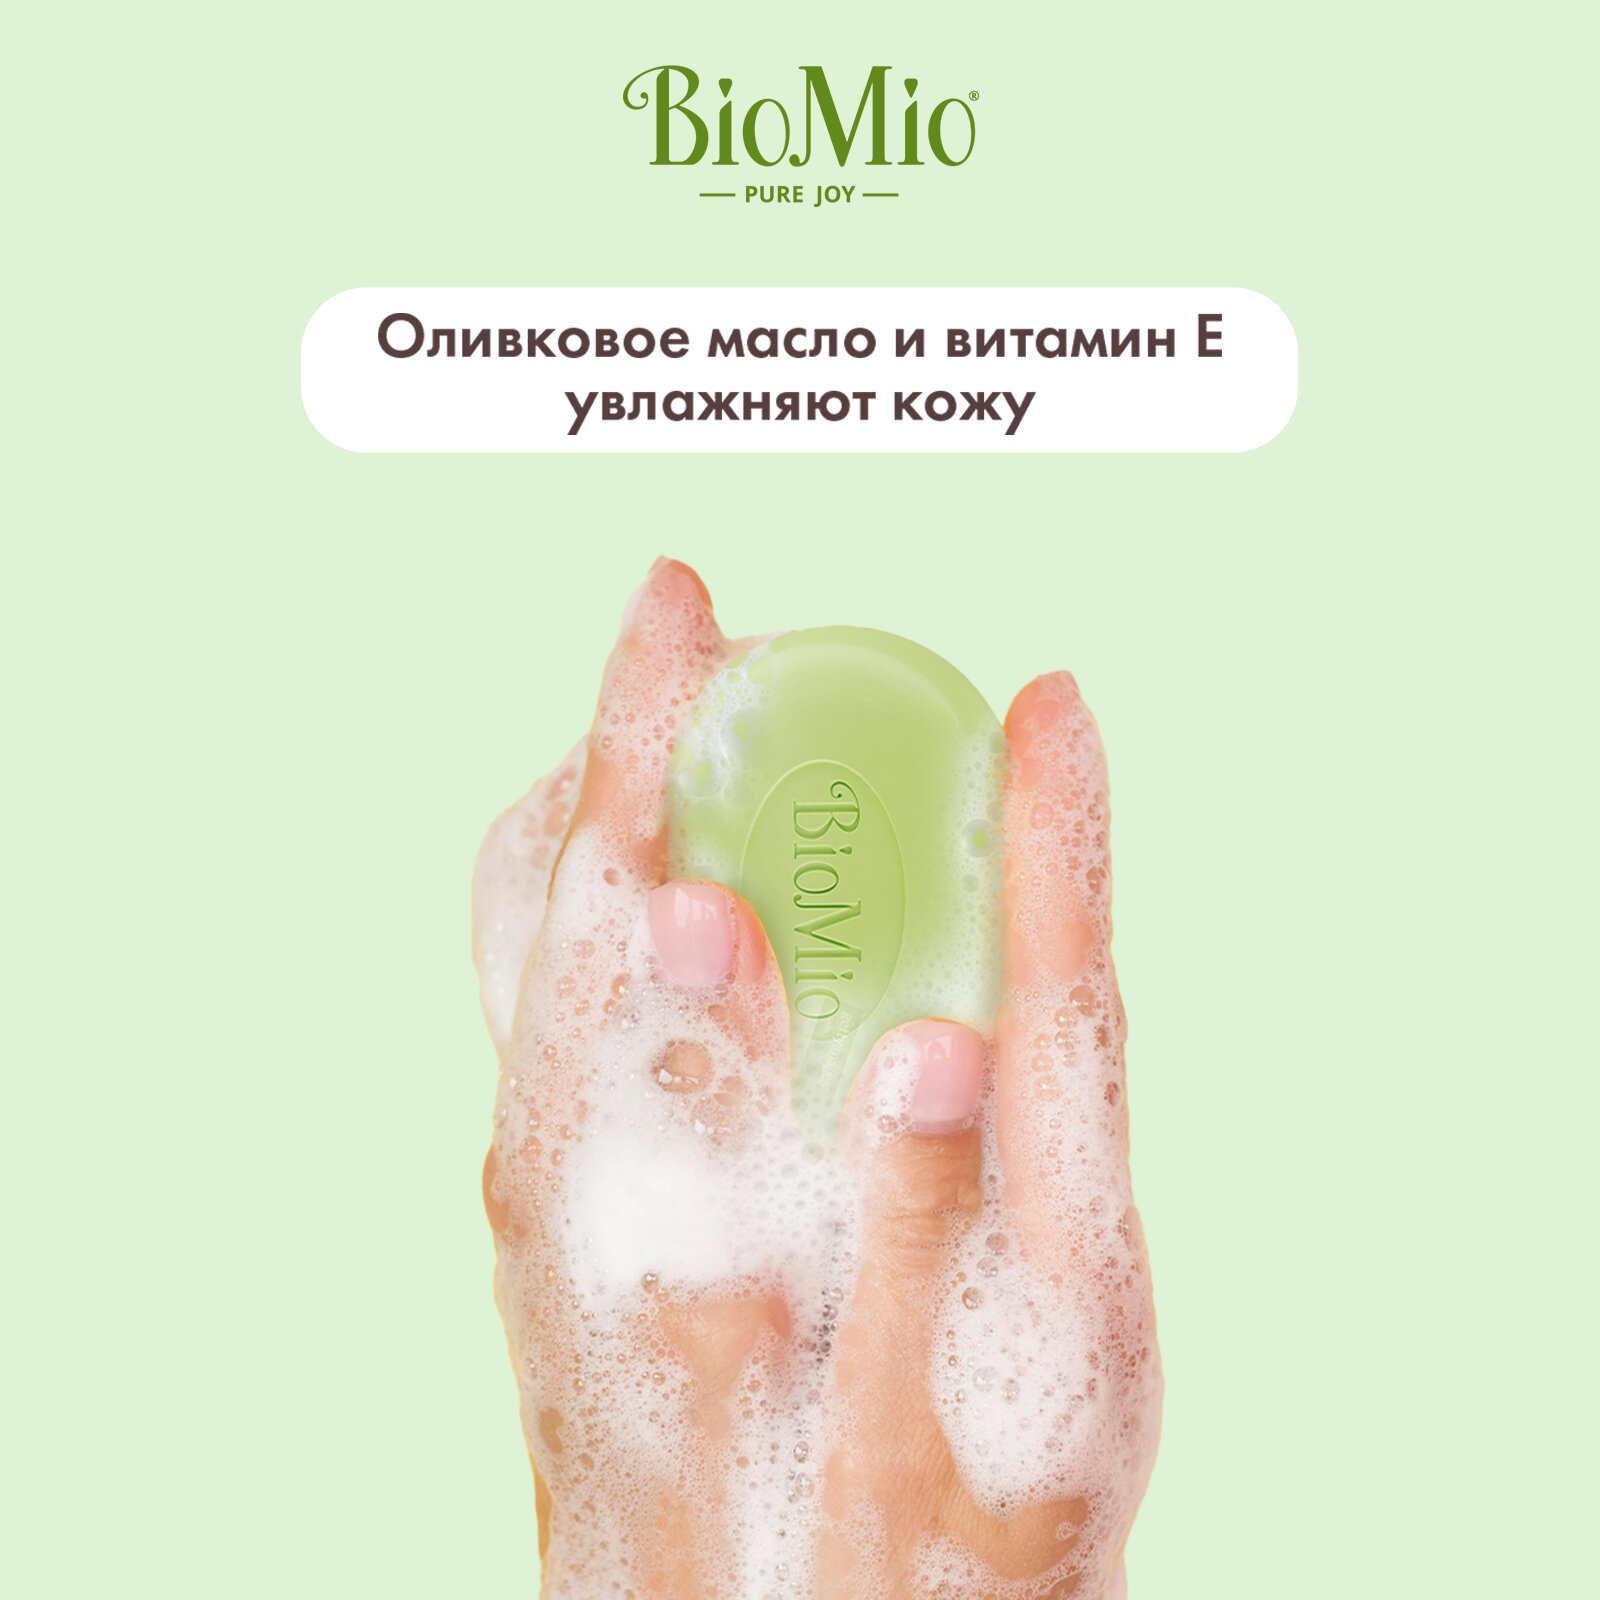 BioMio. BIO-SOAP AROMATHERAPY Натуральное мыло. Зеленый чай и эфирное масло Бергамота / BioMio BIO-SOAP AROMATHERAPY Natural bar soap. Green tea & Bergamot essential oil, 90 г. (3 шт)